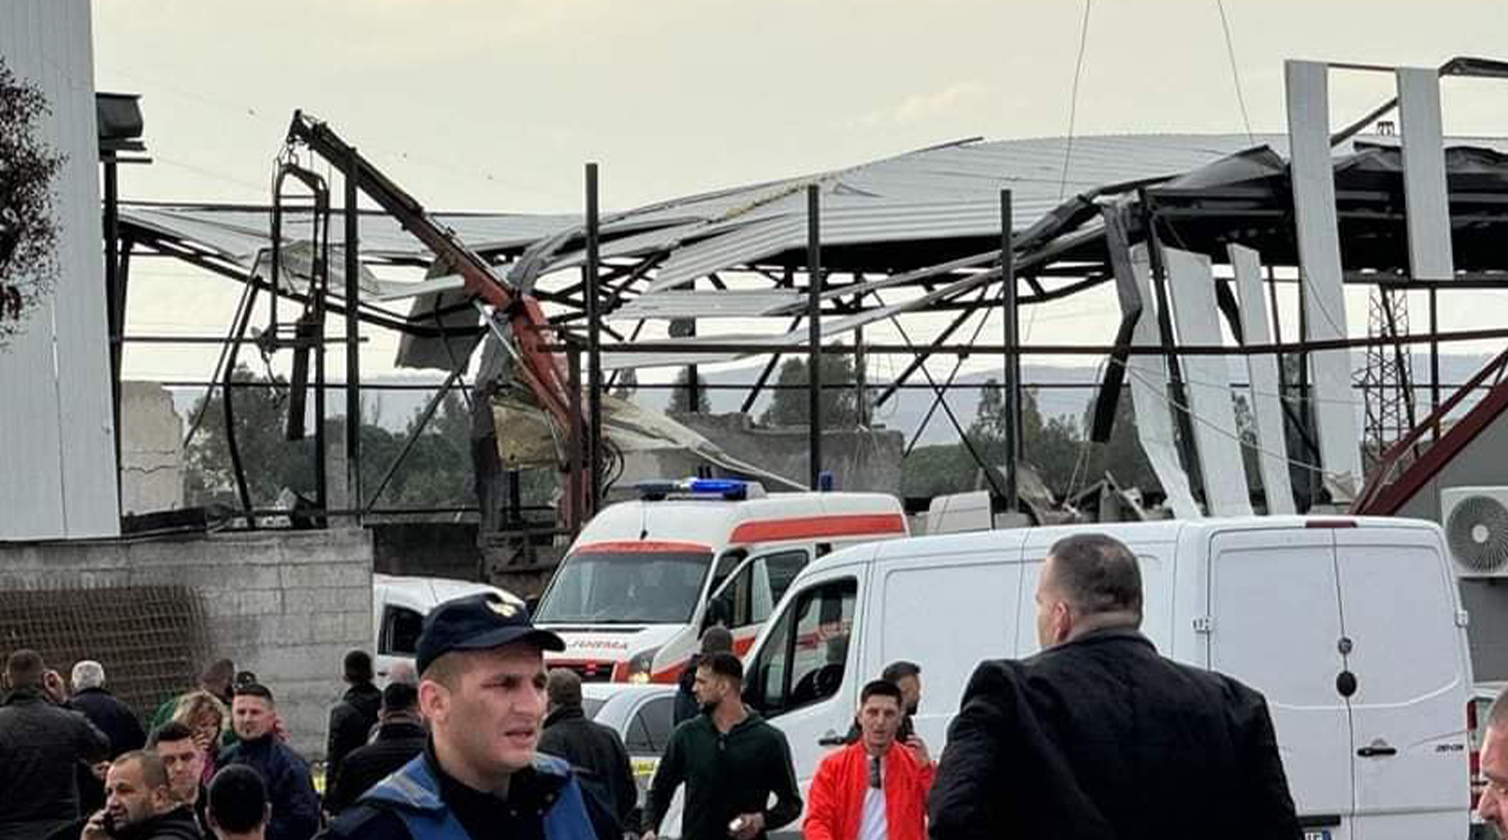 Shpërthimi në Lushnjë/ Eksperti: Nuk lejohet ndërtimi i një fabrike poshtë linjës së tensionit të lartë